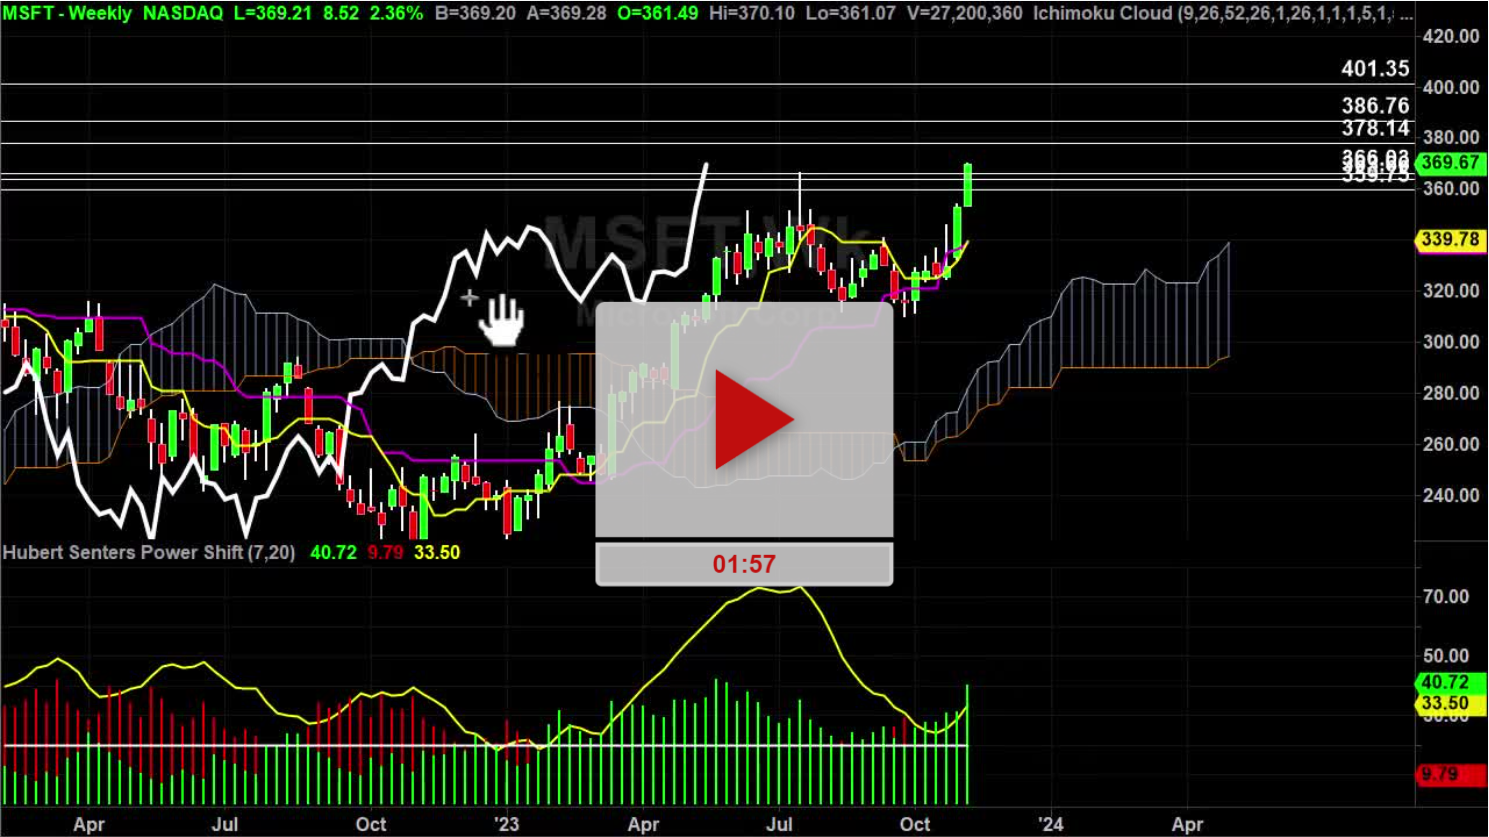 MSFT Stock Weekly Chart Analysis Part 1 - Hubert Senters